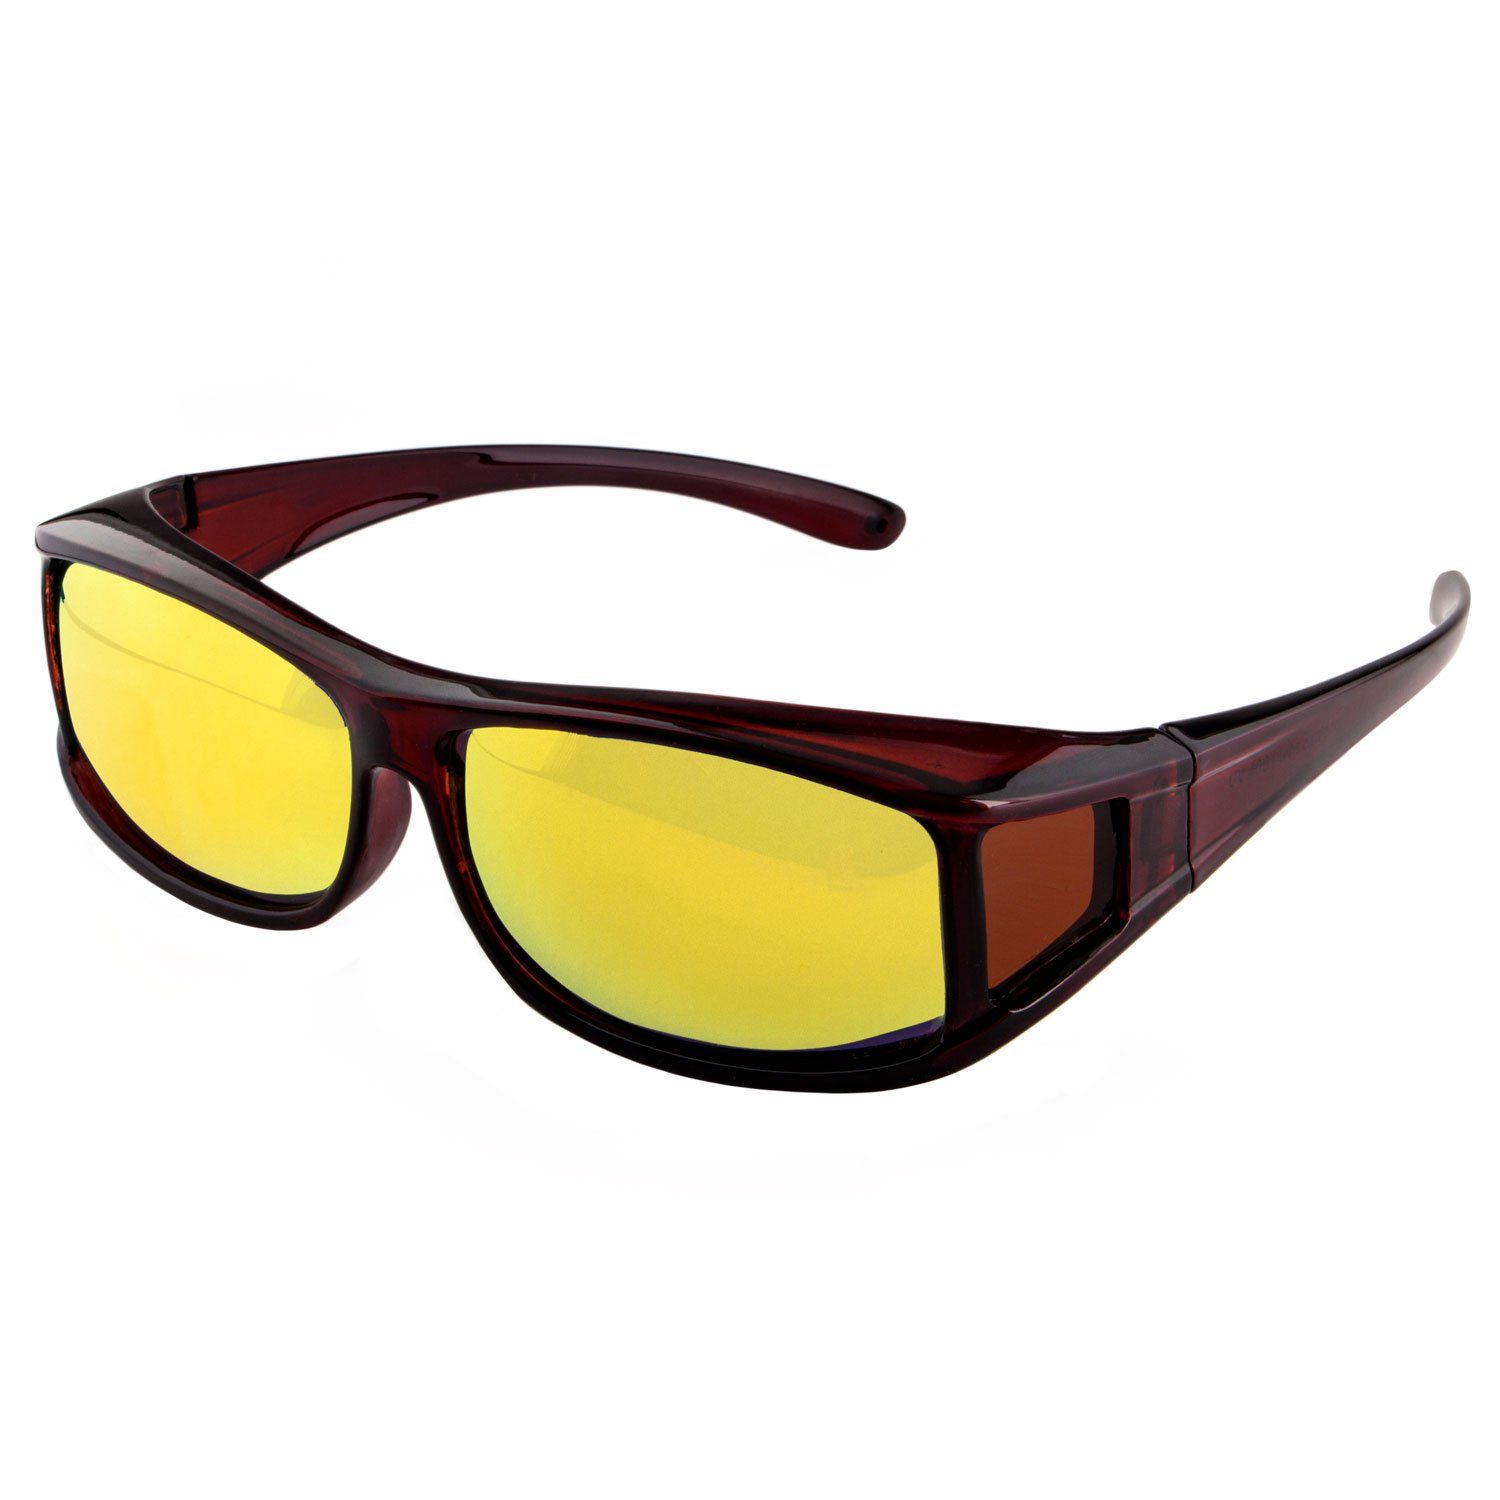 ActiveSol SUNGLASSES Sonnenbrille Überziehsonnenbrille Classic für Herren polarisierte, UV 400 Braun Glänzend